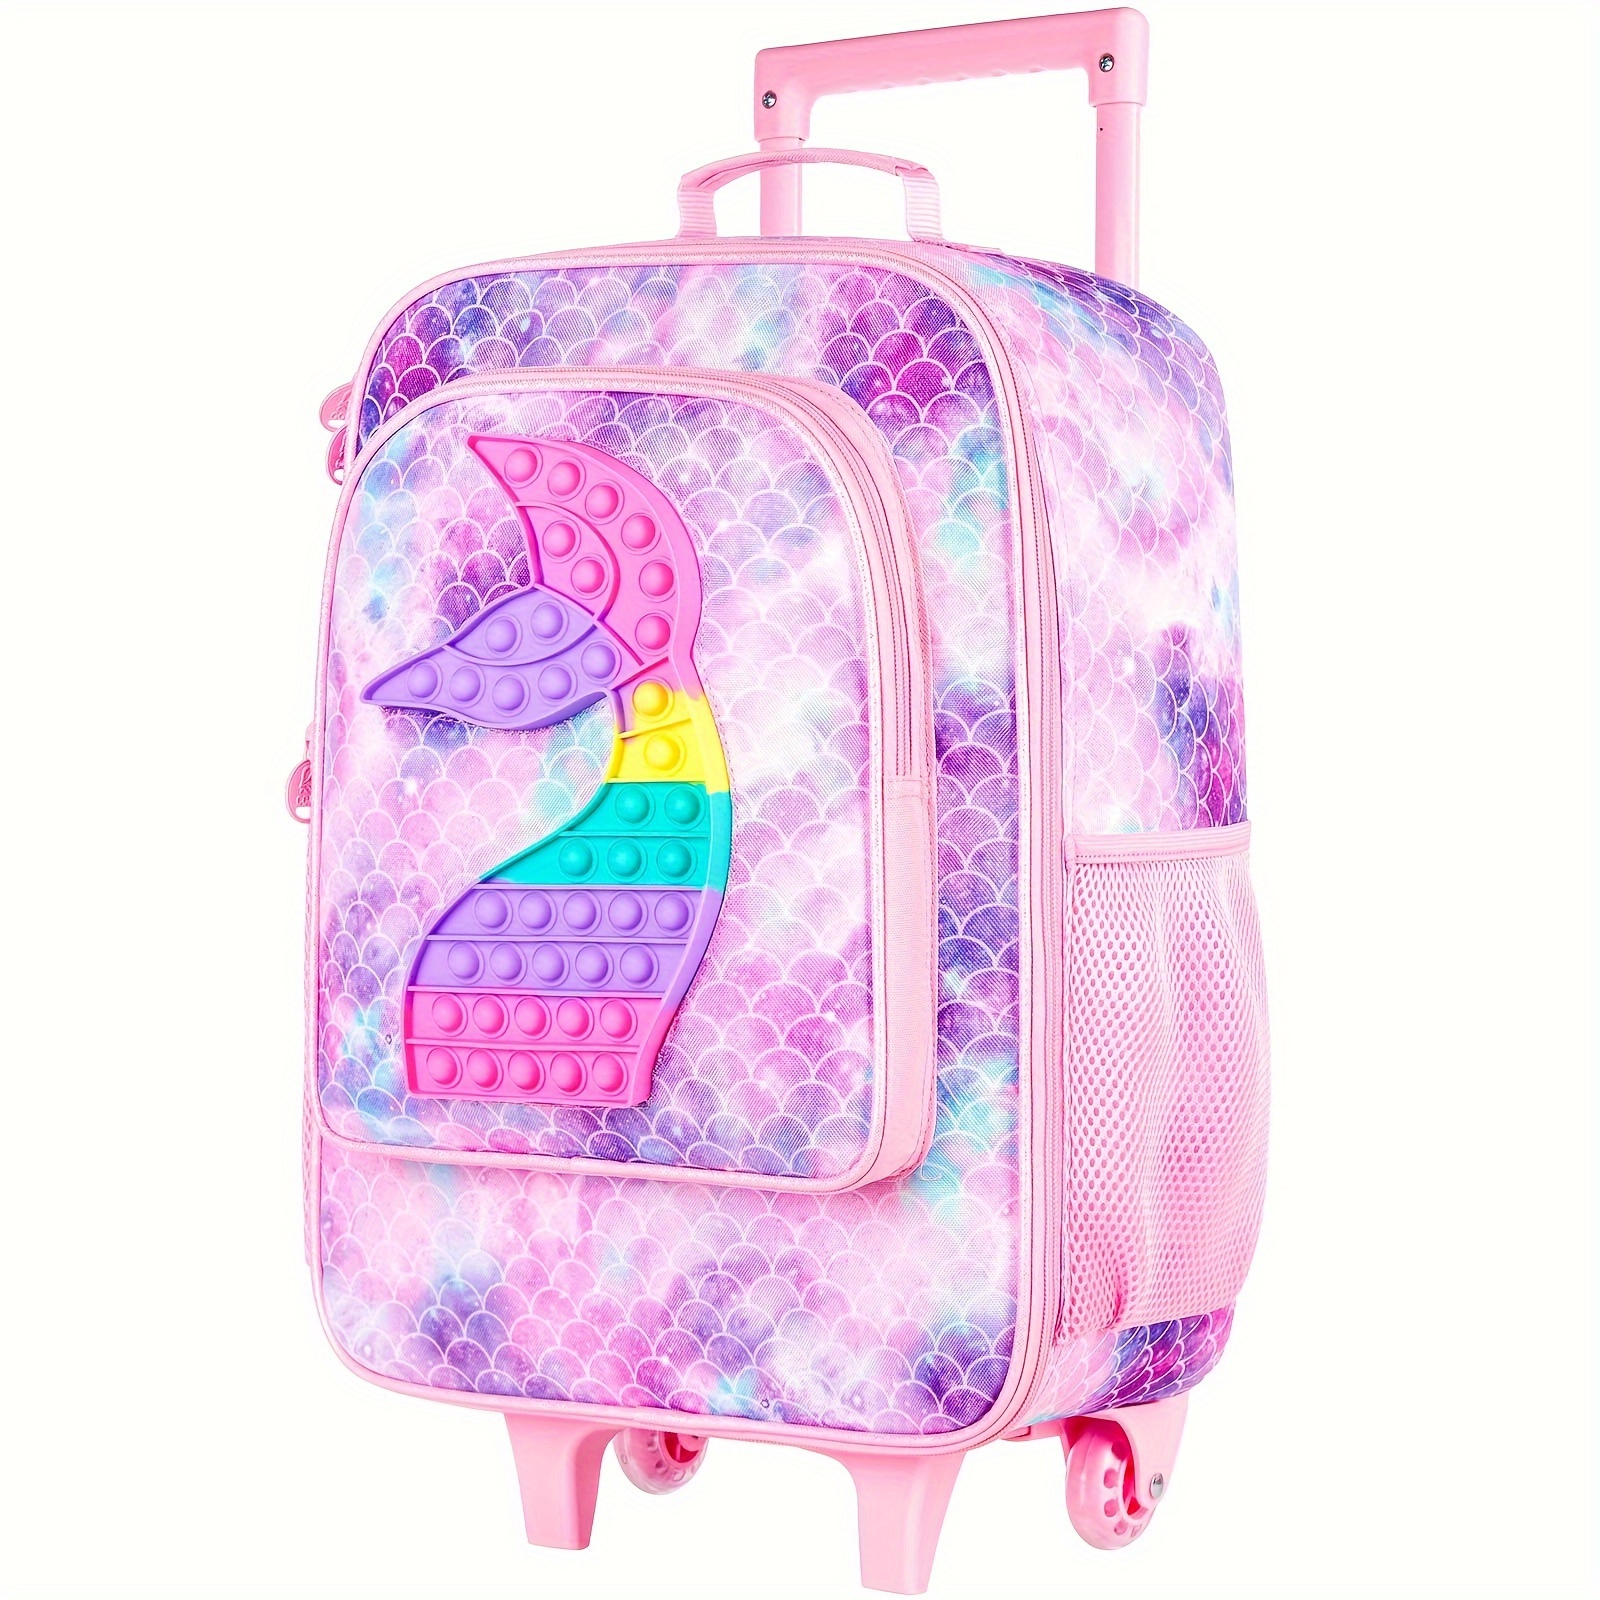 Get It Girl - Petite valise à roulettes